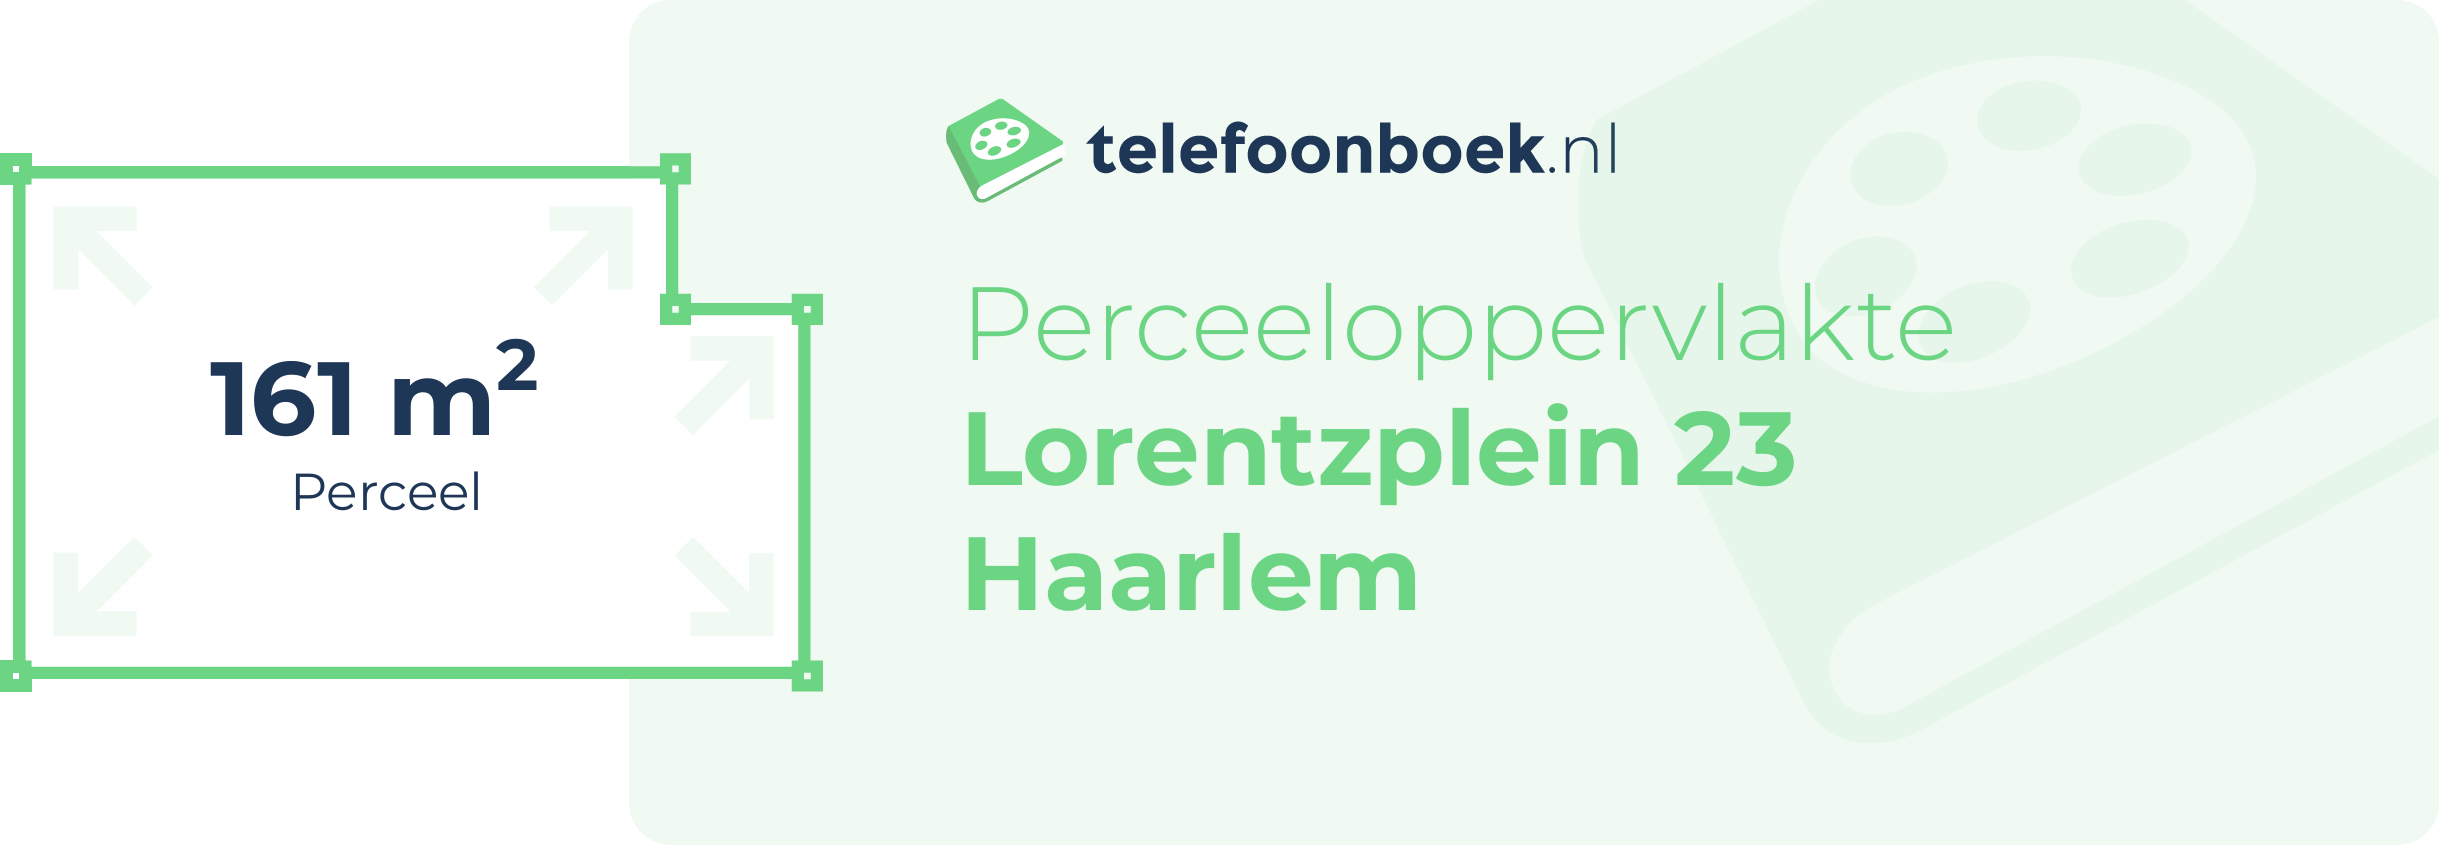 Perceeloppervlakte Lorentzplein 23 Haarlem